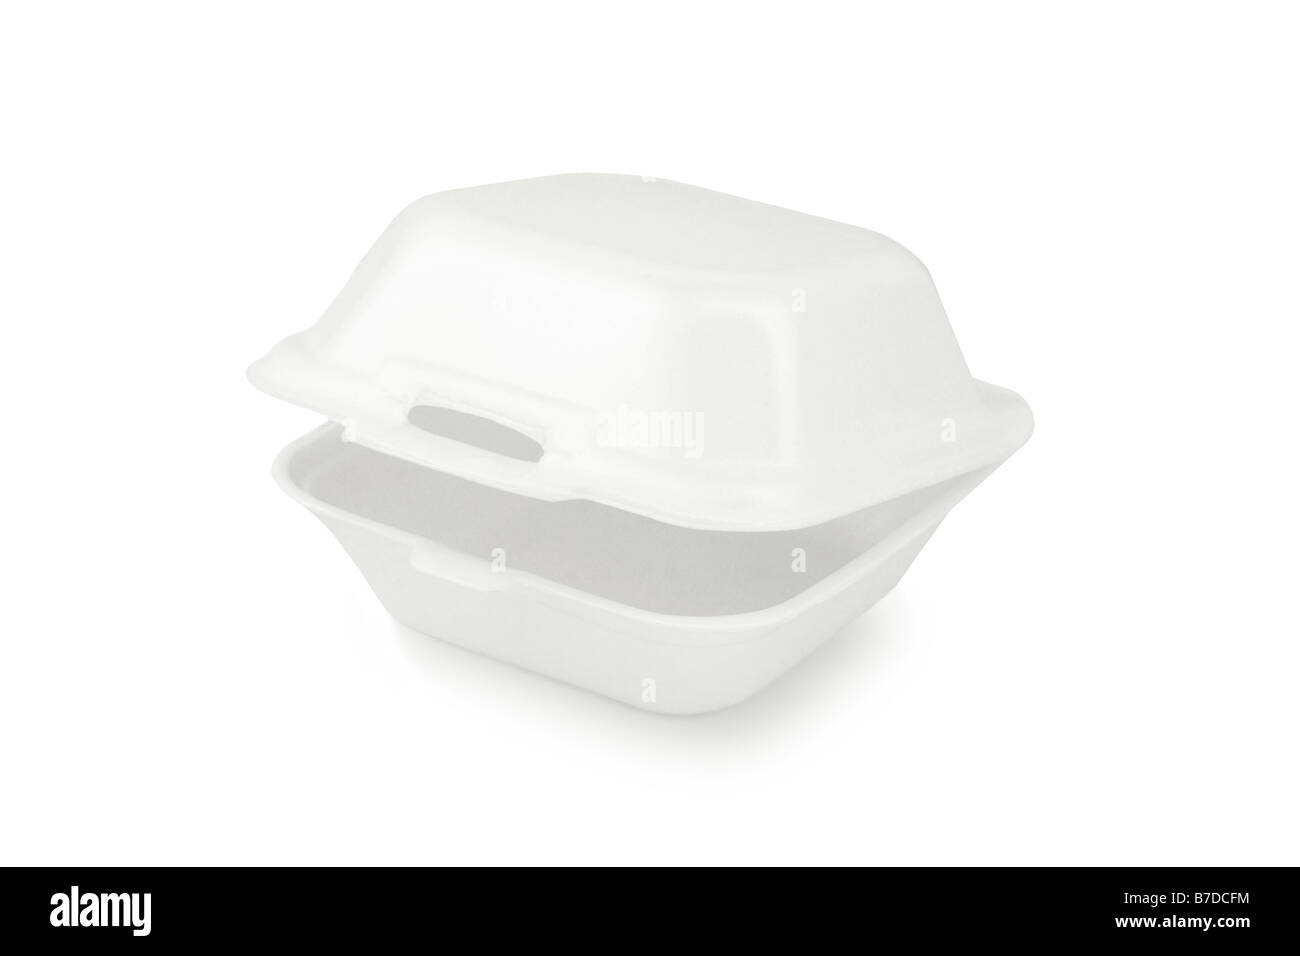 Styrofoam lunch box isolated on white background Stock Photo